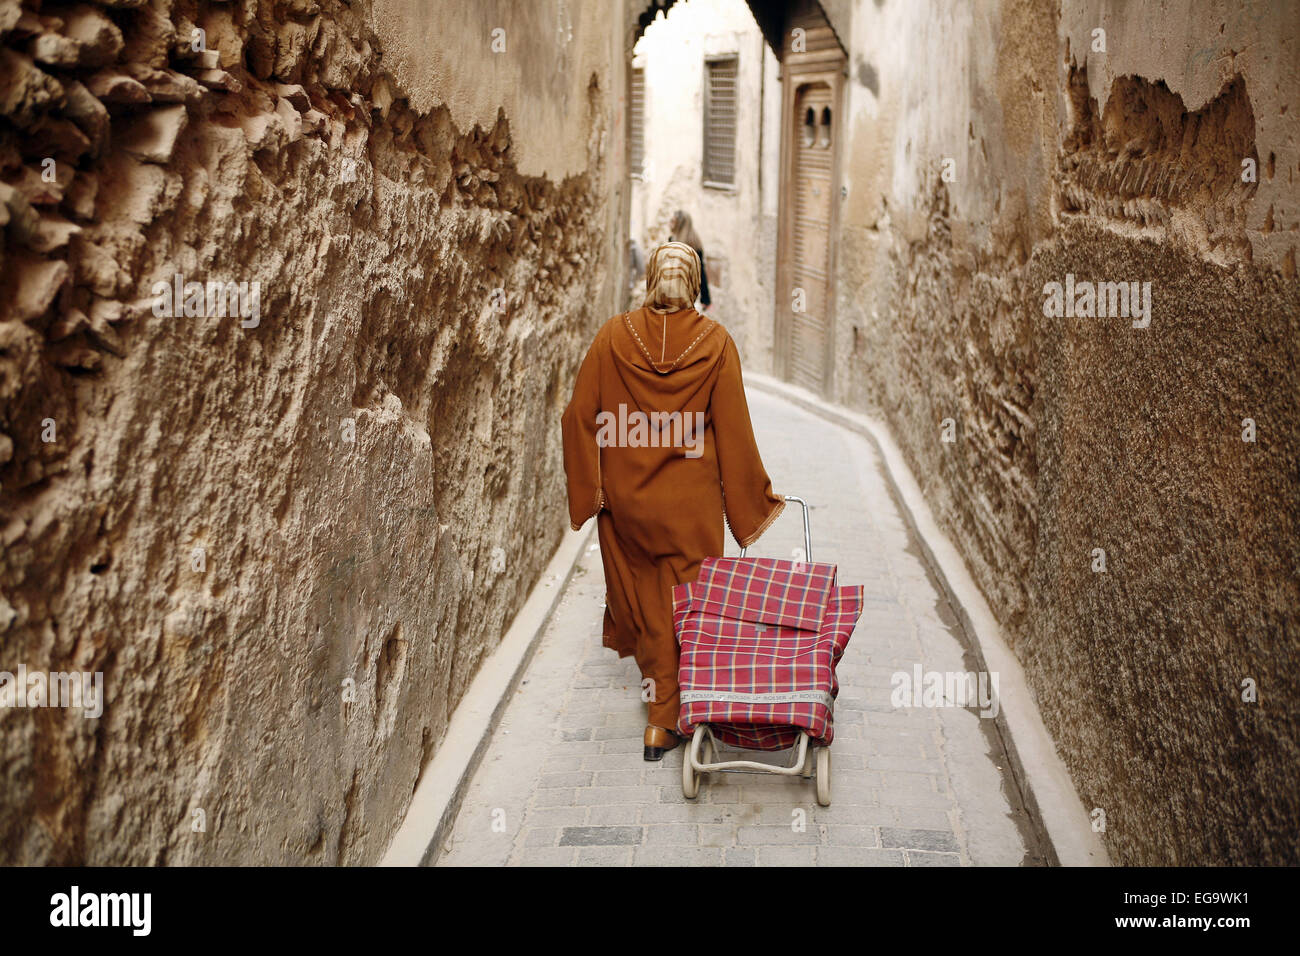 Fes (Marokko), Novembre 2009: Frau angesehen von hinten ziehen einen kleinen Einkaufswagen in einer Gasse Stockfoto